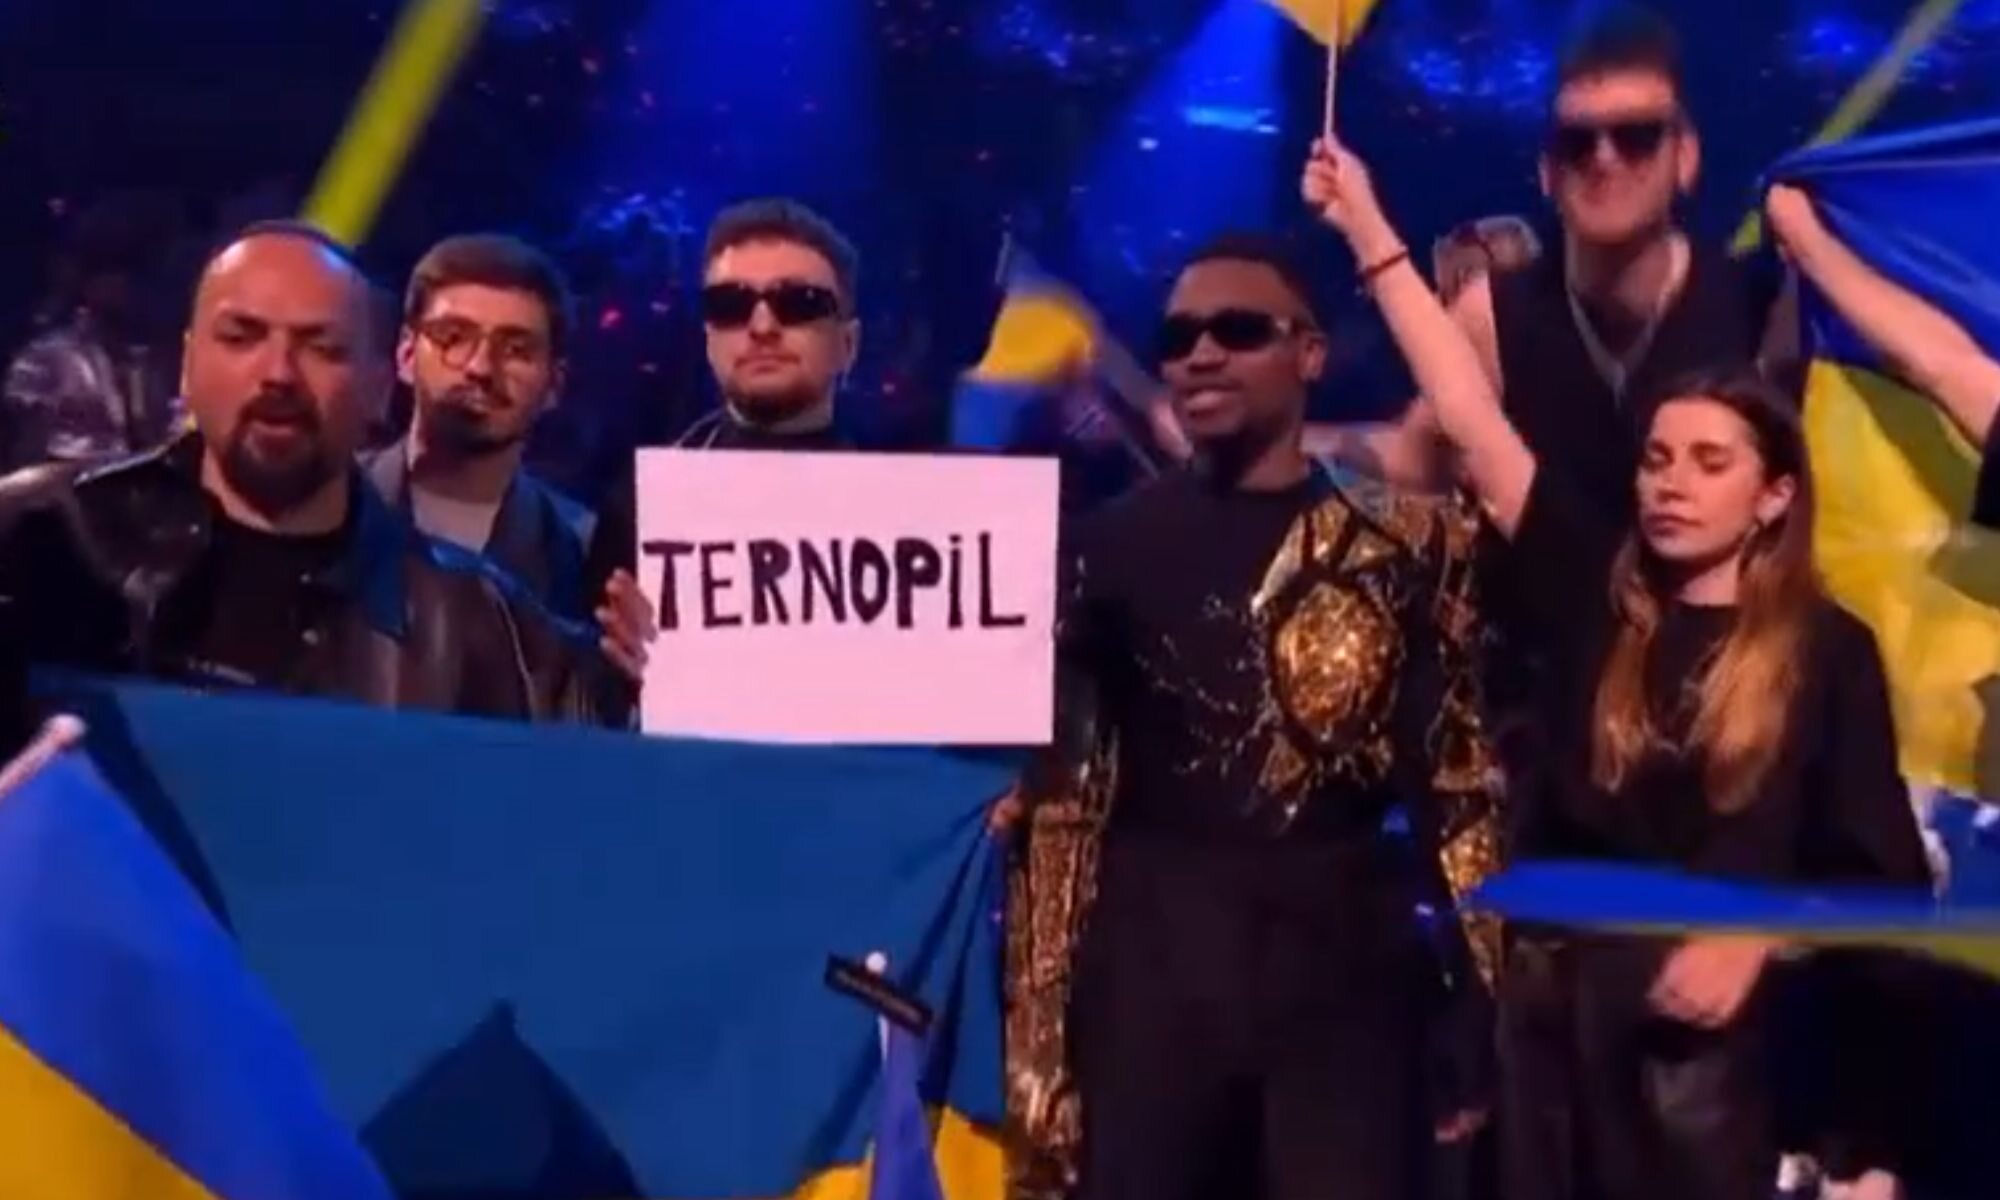 Tvorchi en Eurovisión 2023